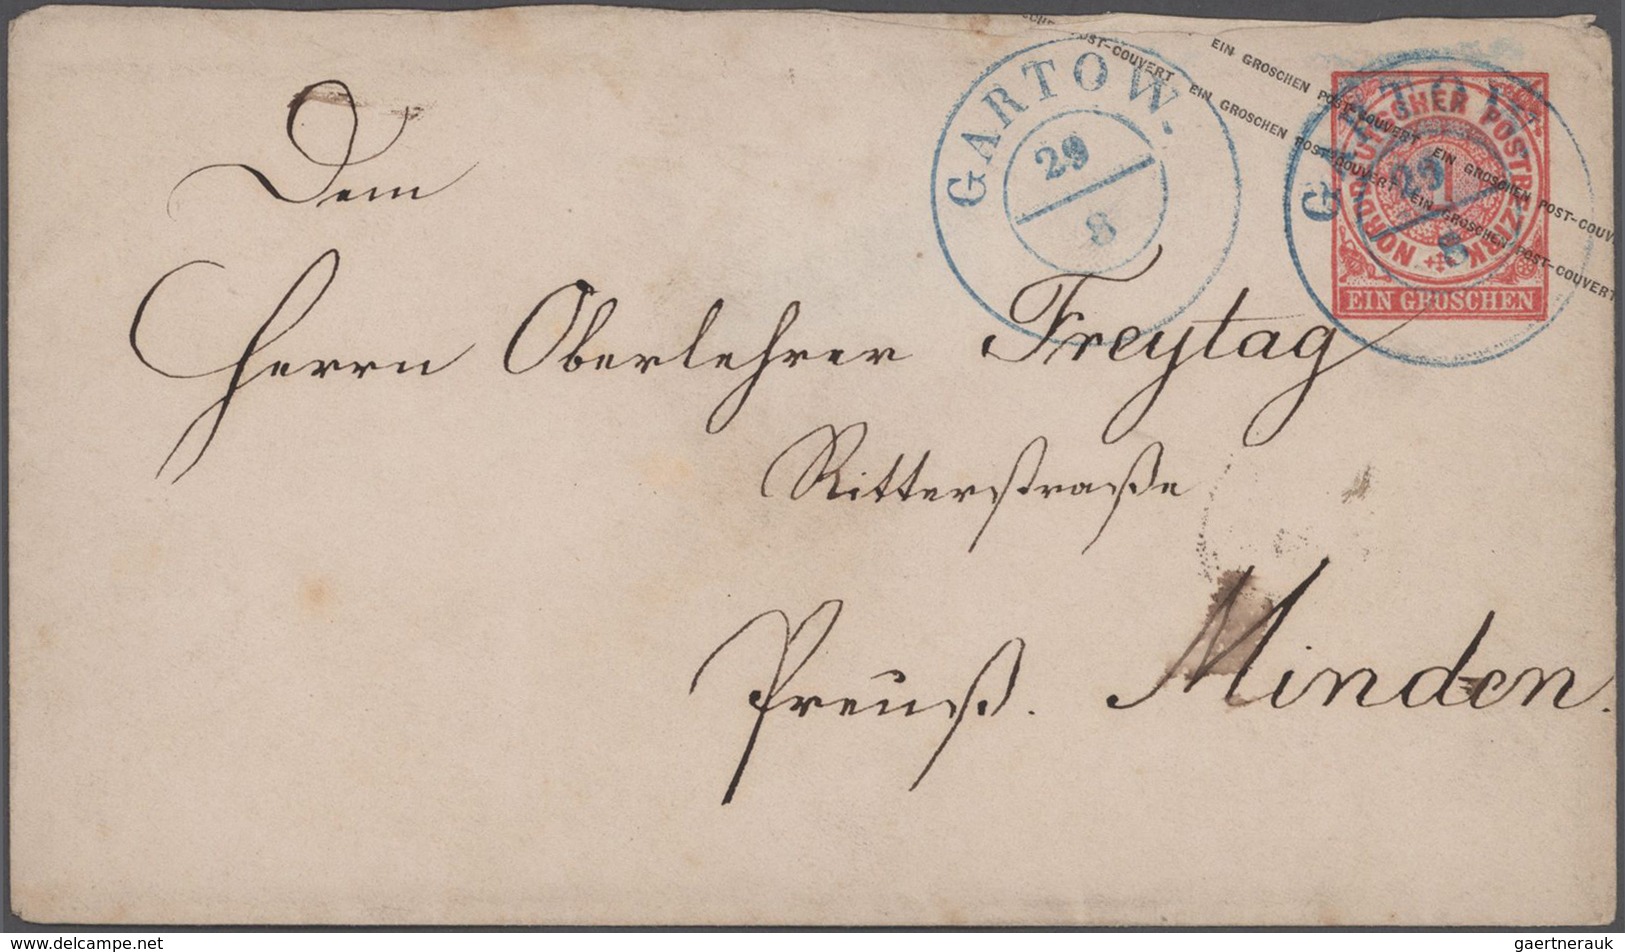 Altdeutschland: 1855/76 Album mit ca. 190 Faltbriefen und gebrauchten Ganzsachen (vor allem frühe Au